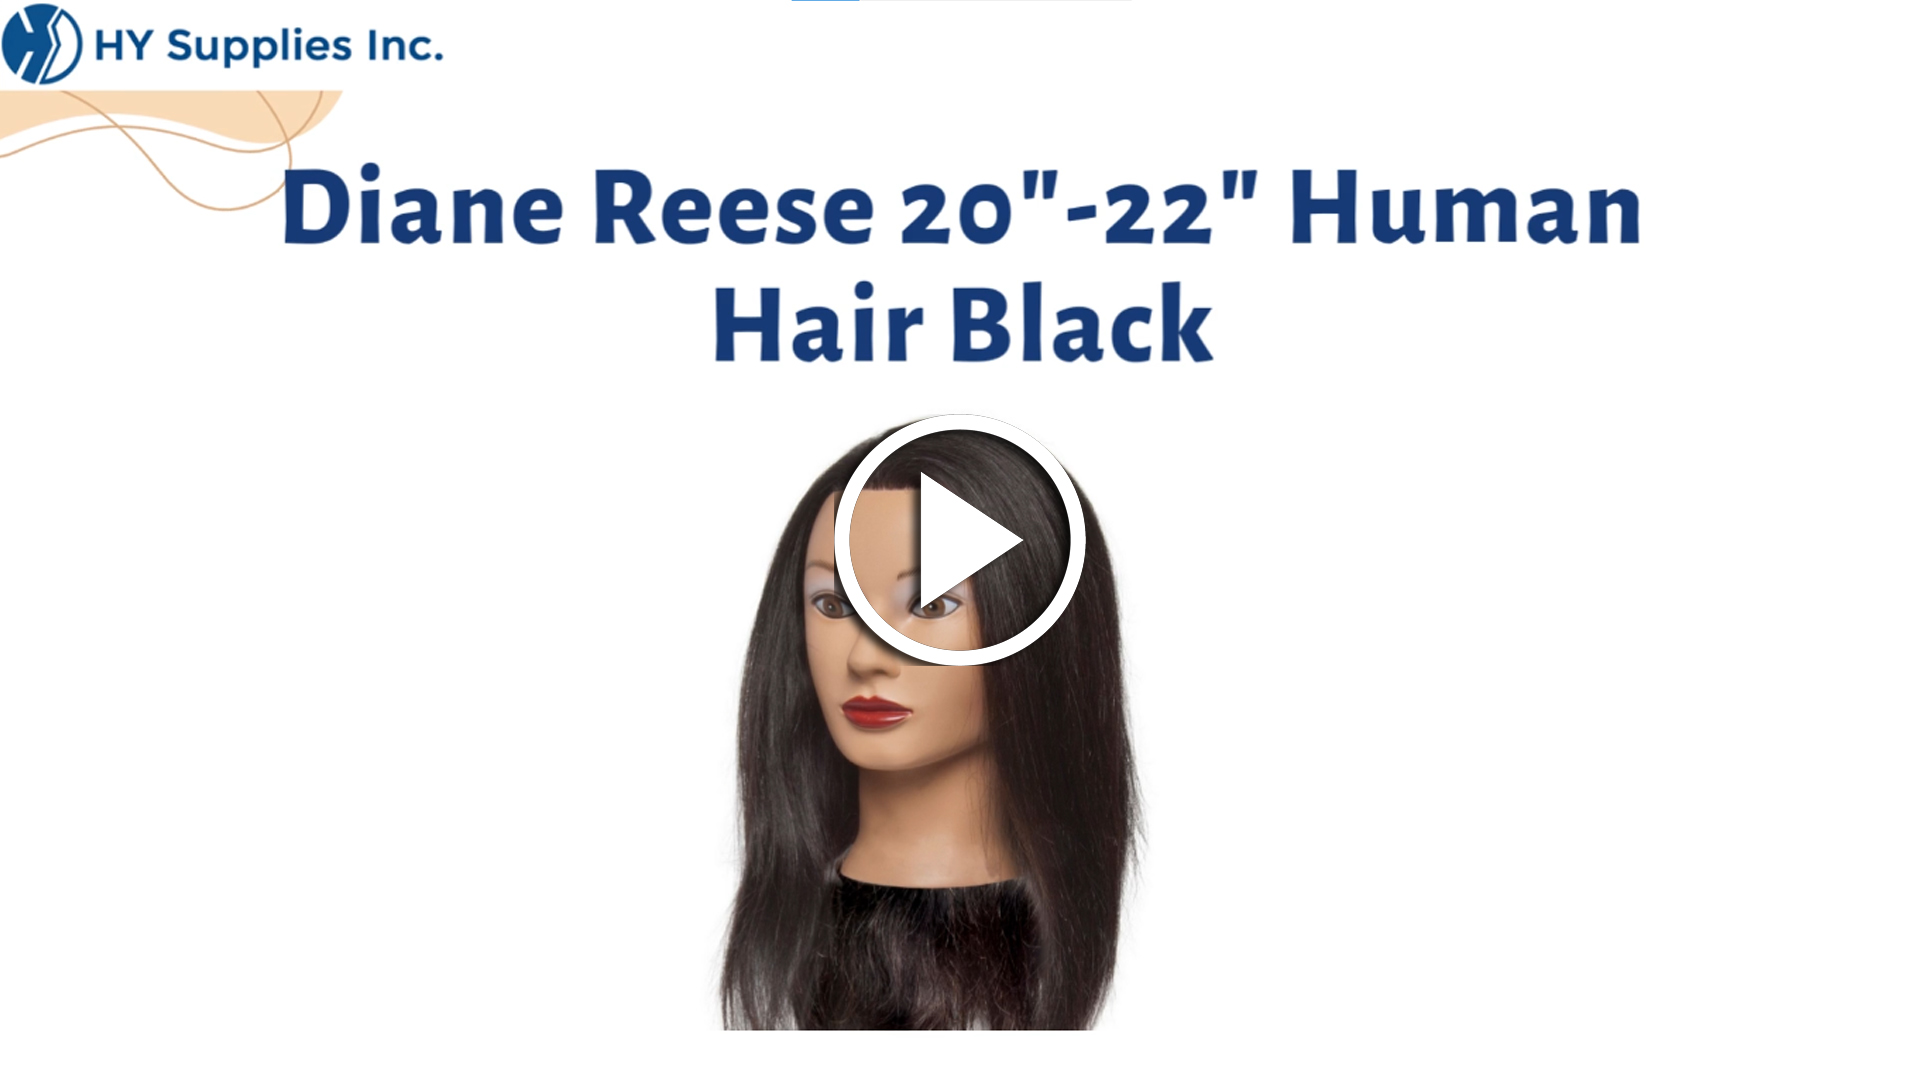 Diane Reese 20"-22" Human Hair Black